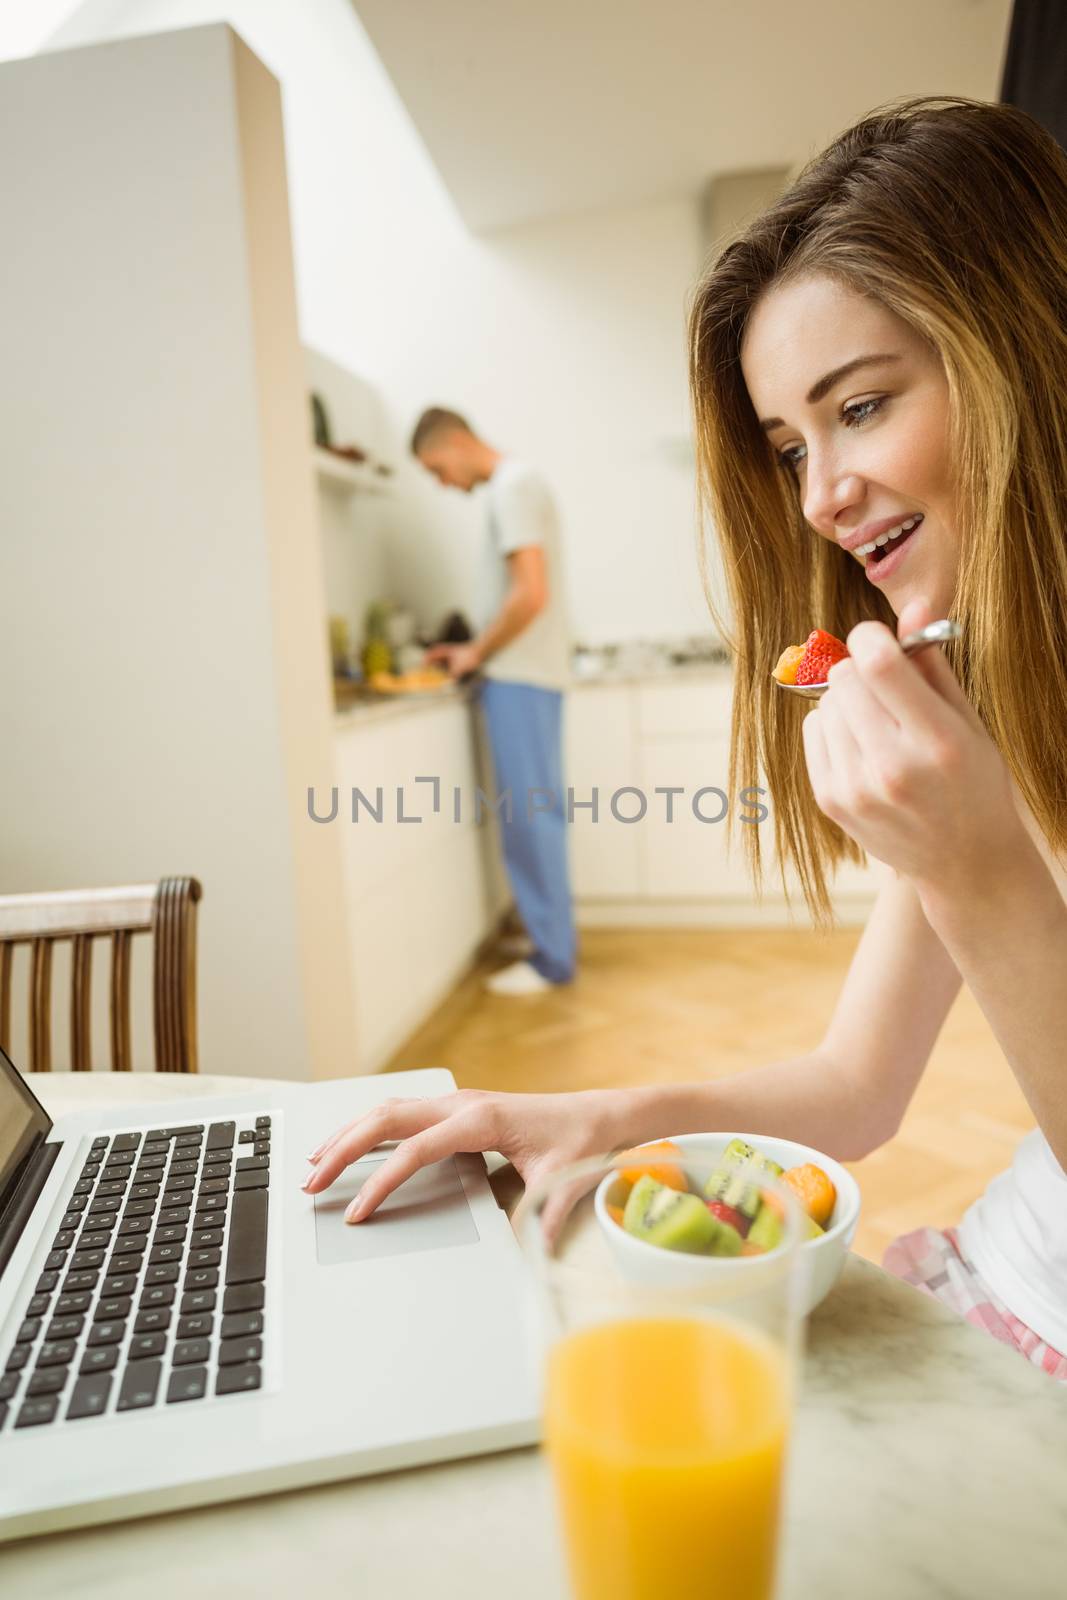 Woman eating fruit salad at breakfast by Wavebreakmedia